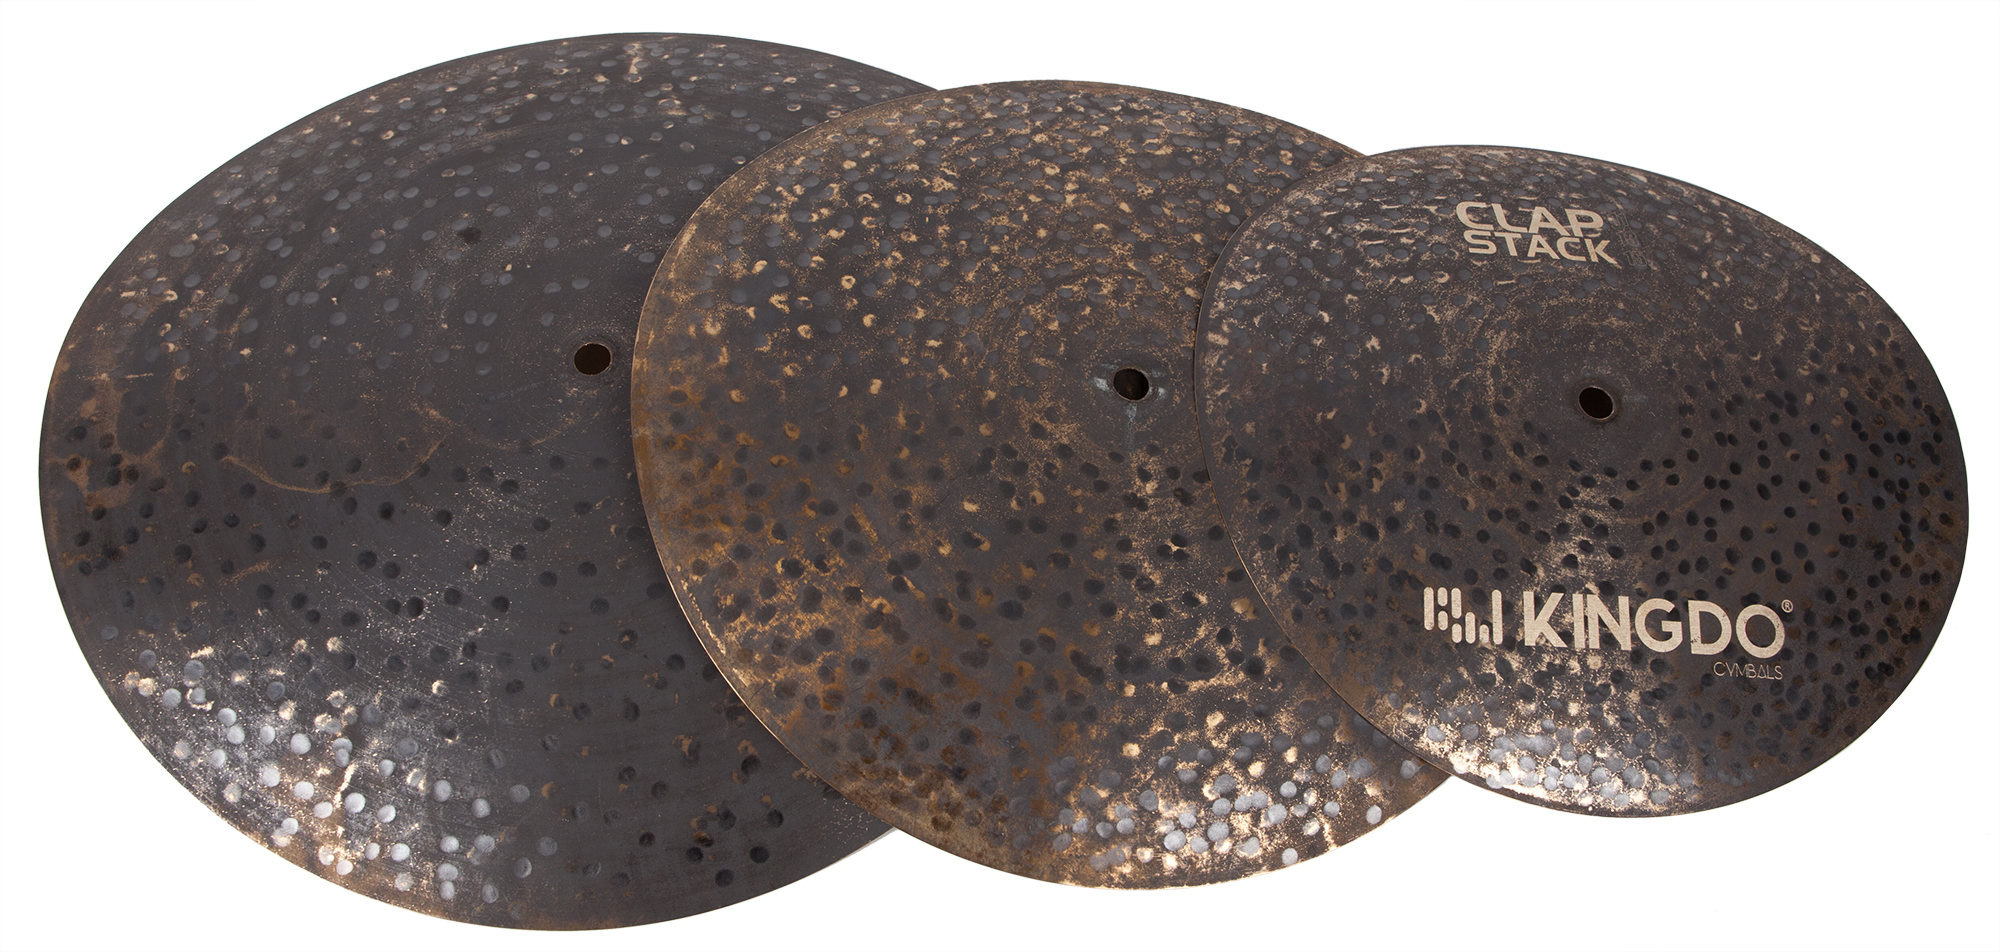 Тарелки, барабаны для ударных установок KINGDO CLAP STACK CYMBAL тарелки барабаны для ударных установок zildjian sd4680 s dark cymbal pack 14h 16c 18c 20r